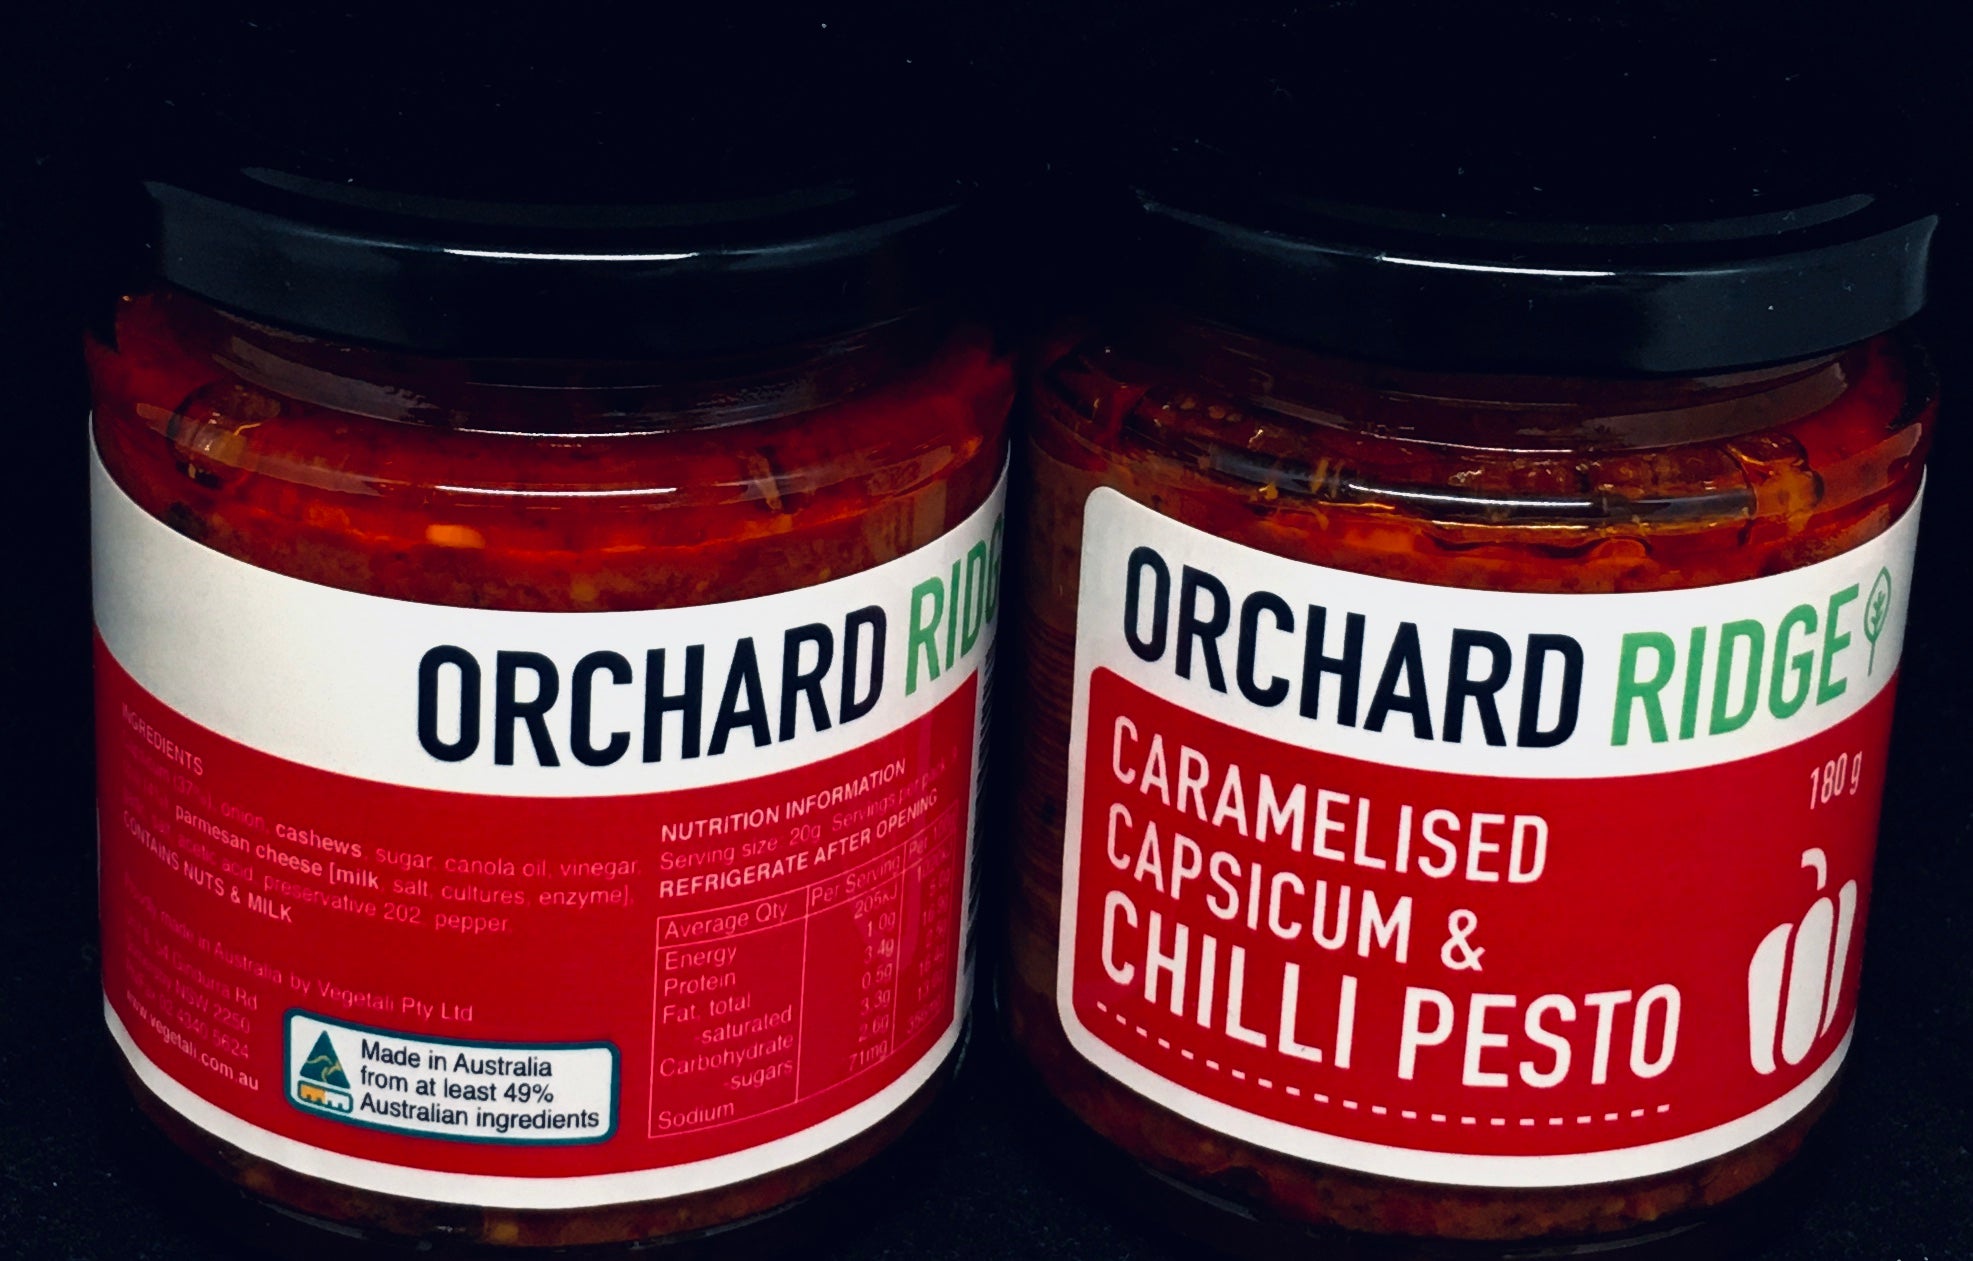 Orchard Ridge Caramelised Capsicum & Chilli Pesto